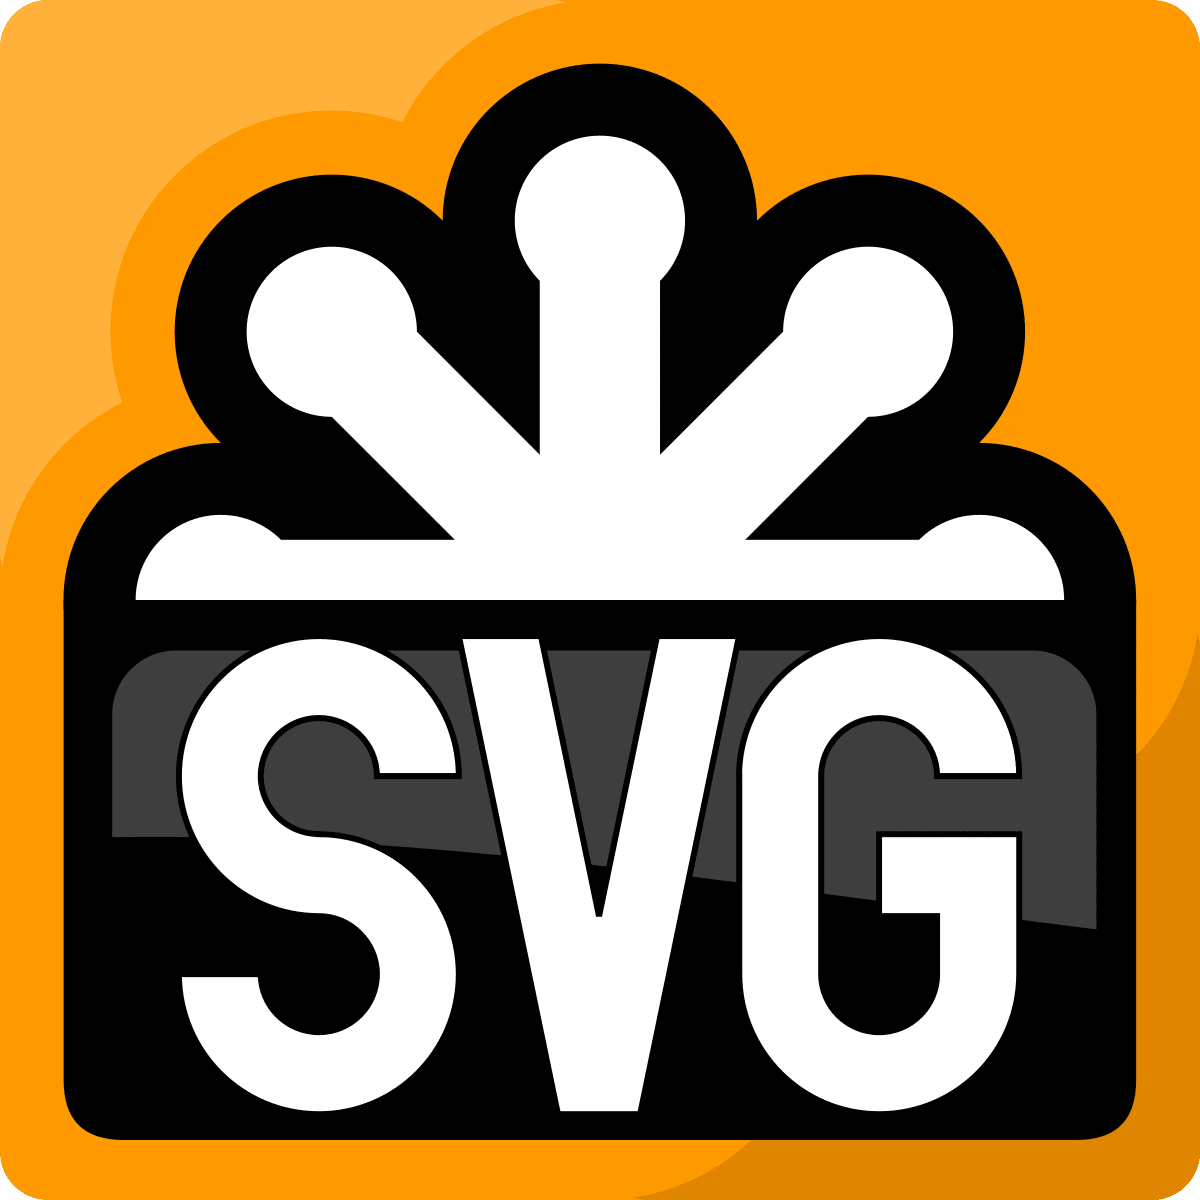 billedfiltyper: SVG-logo